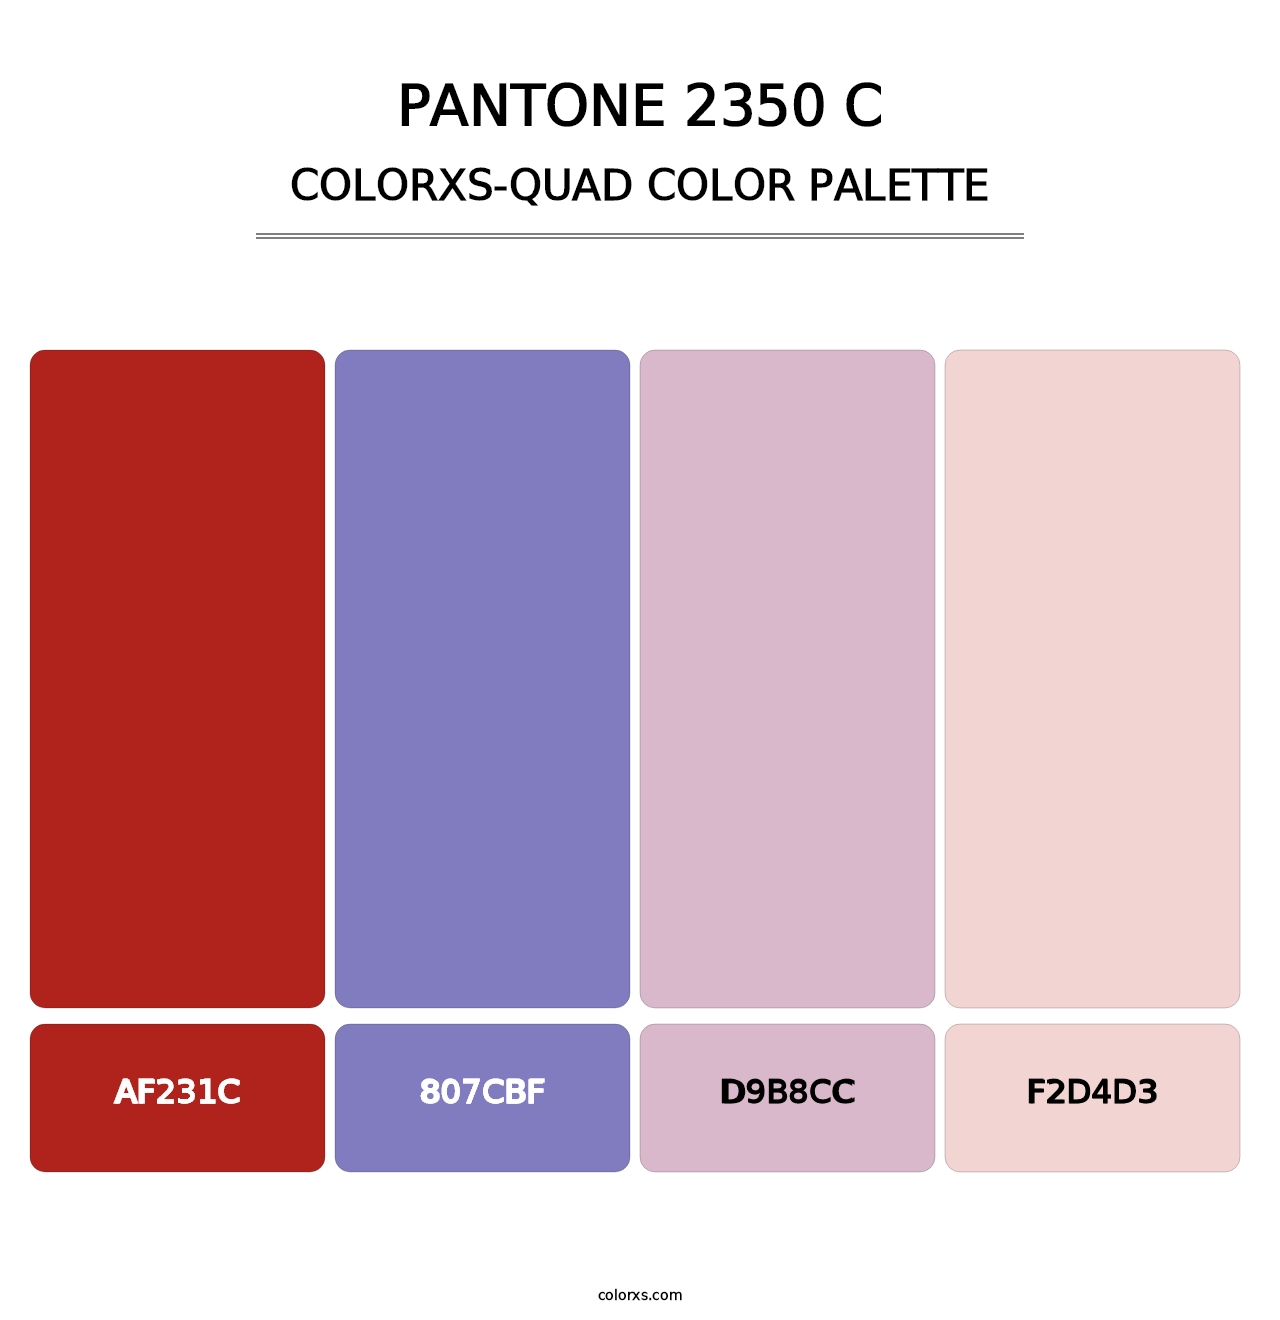 PANTONE 2350 C - Colorxs Quad Palette